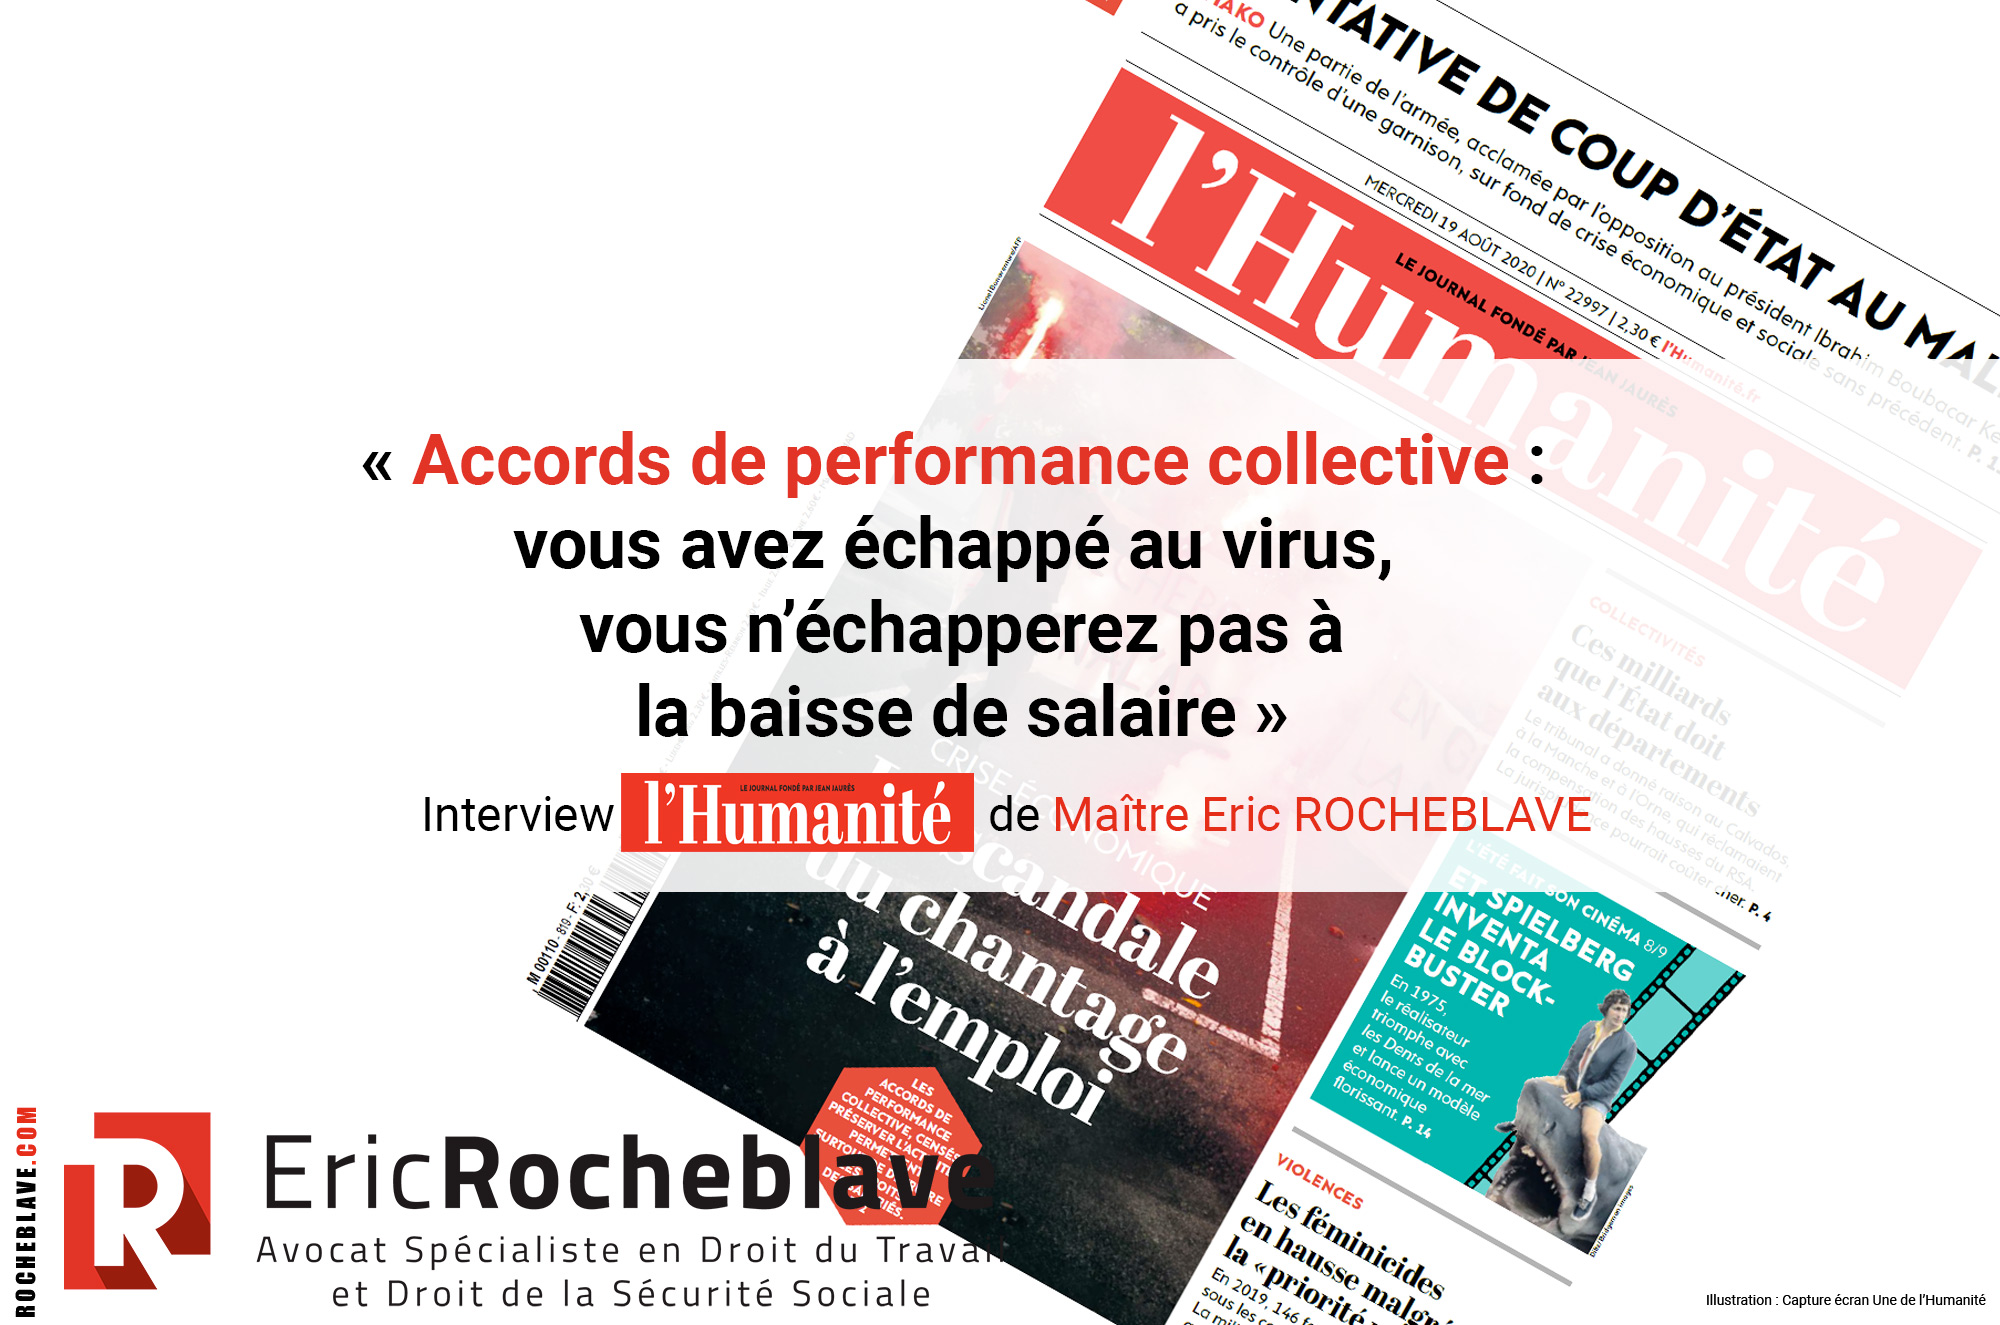 « Accords de performance collective : vous avez échappé au virus, vous n’échapperez pas à la baisse de salaire » ​Interview l’Humanité de Maître Eric ROCHEBLAVE